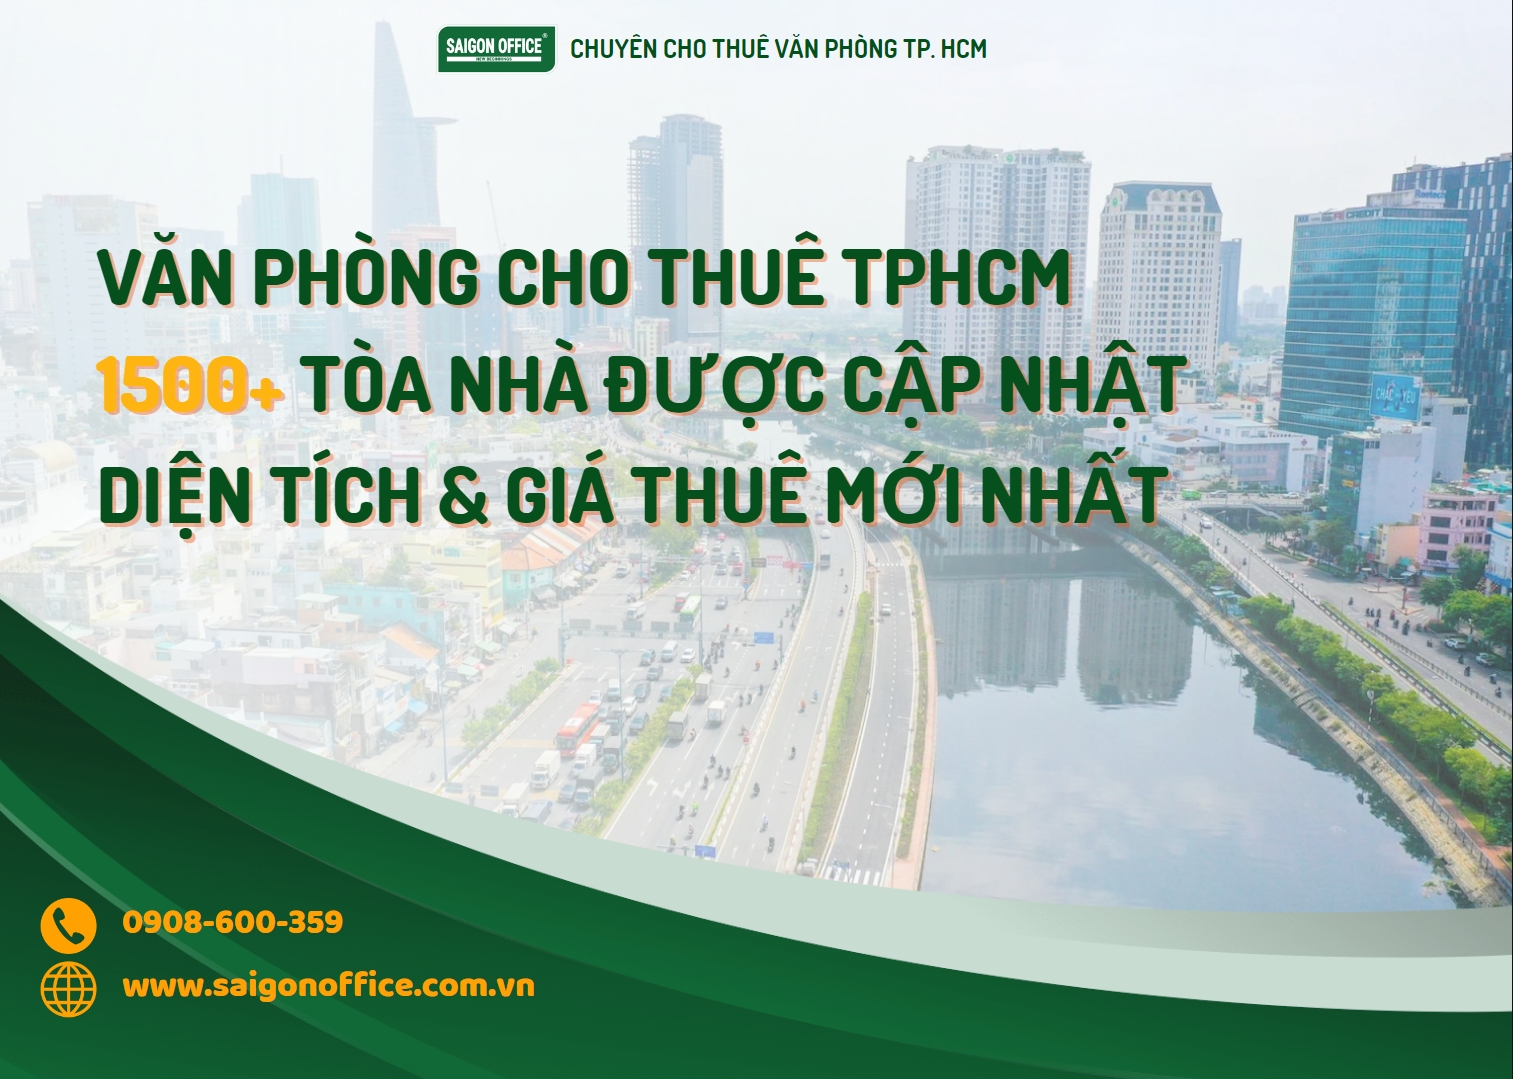 Tổng quan về thị trường văn phòng cho thuê tại Thành phố Hồ Chí Minh